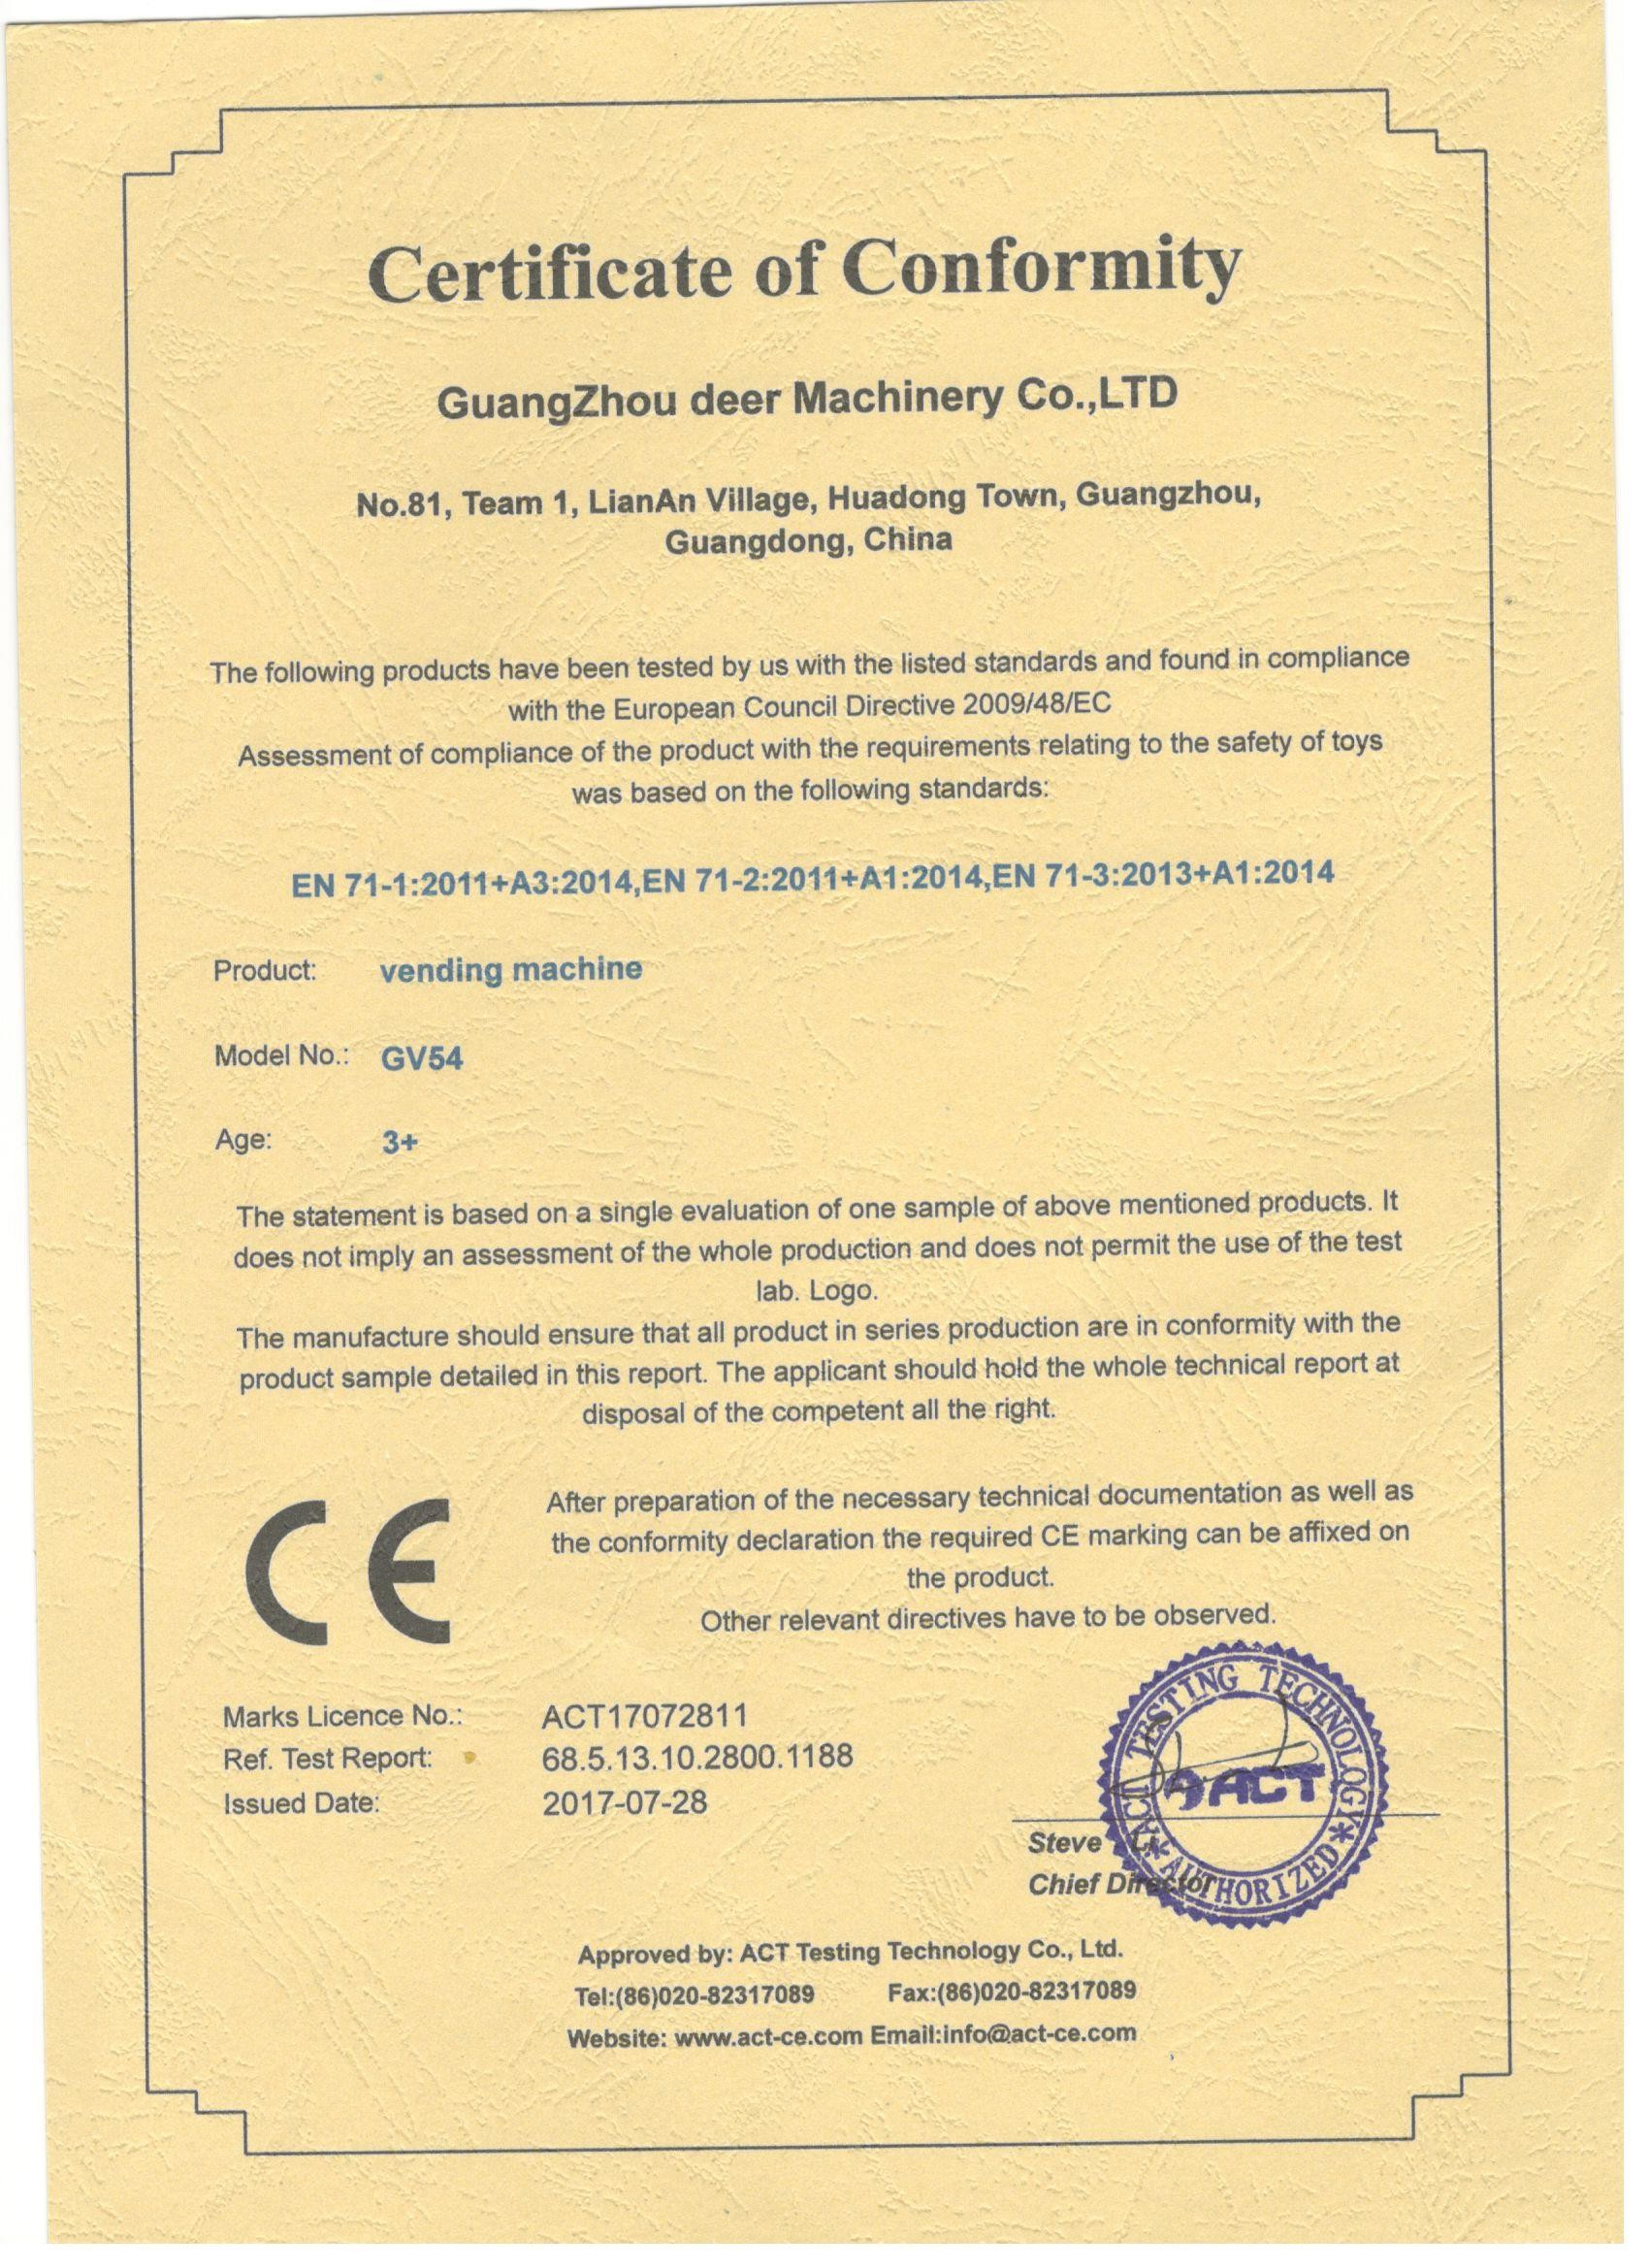 China Guangzhou Deer Machinery Co., Ltd. Certification